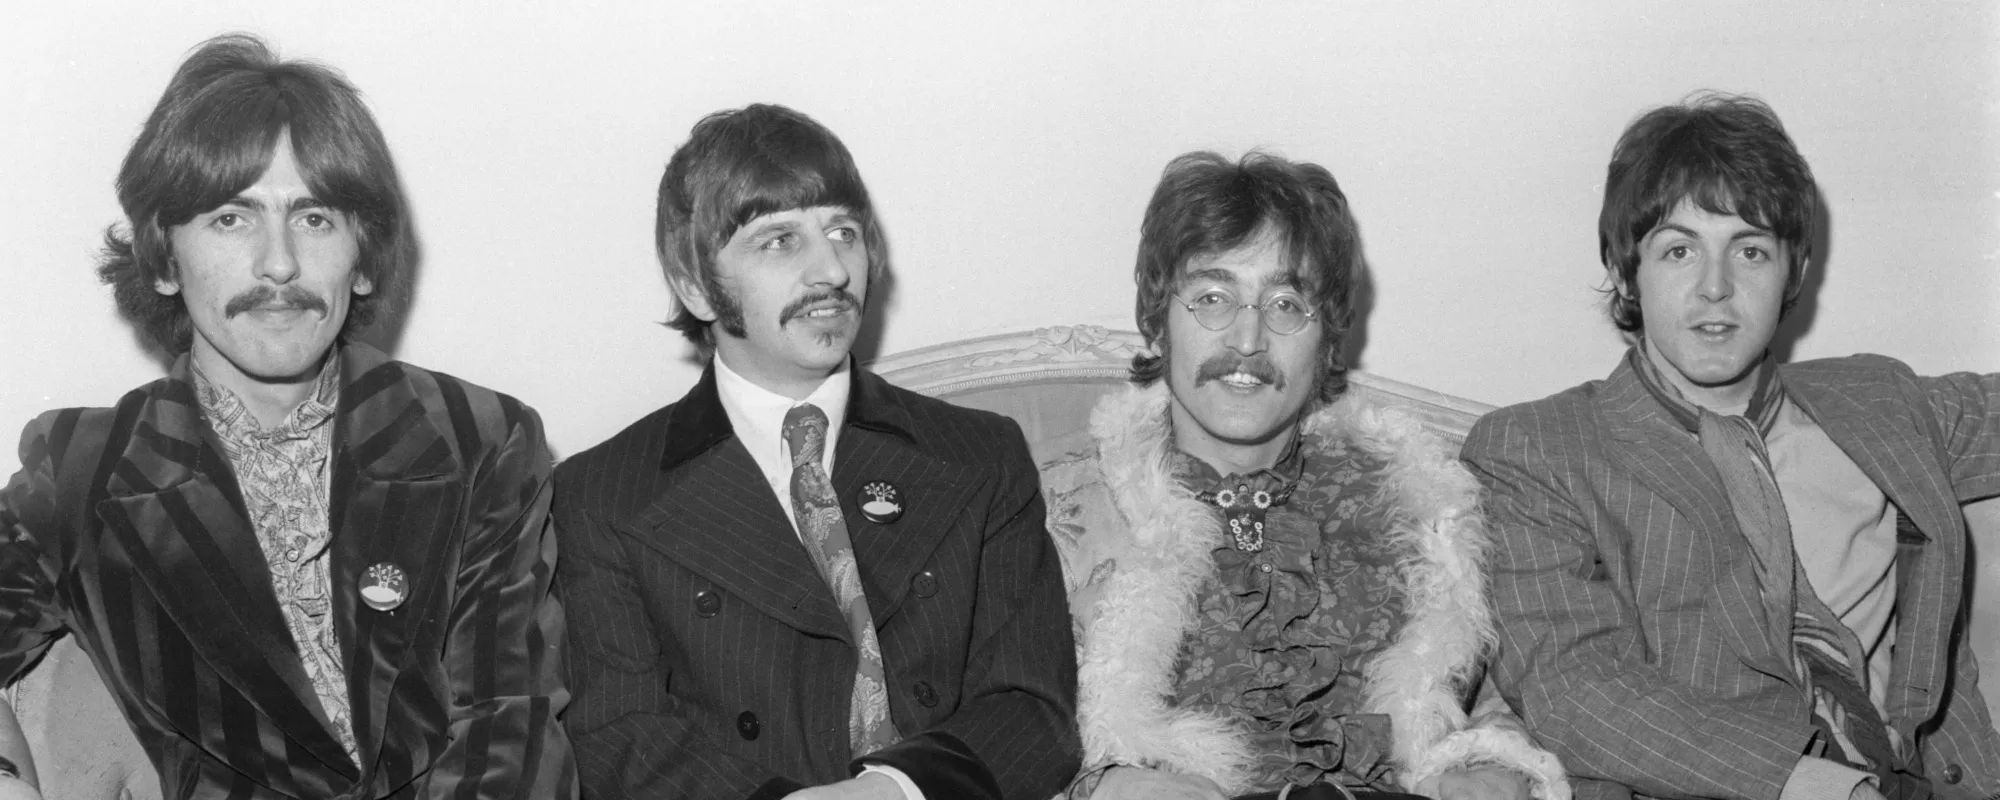 Paul McCartney Reveals John Lennon Instigated Beatles Breakup